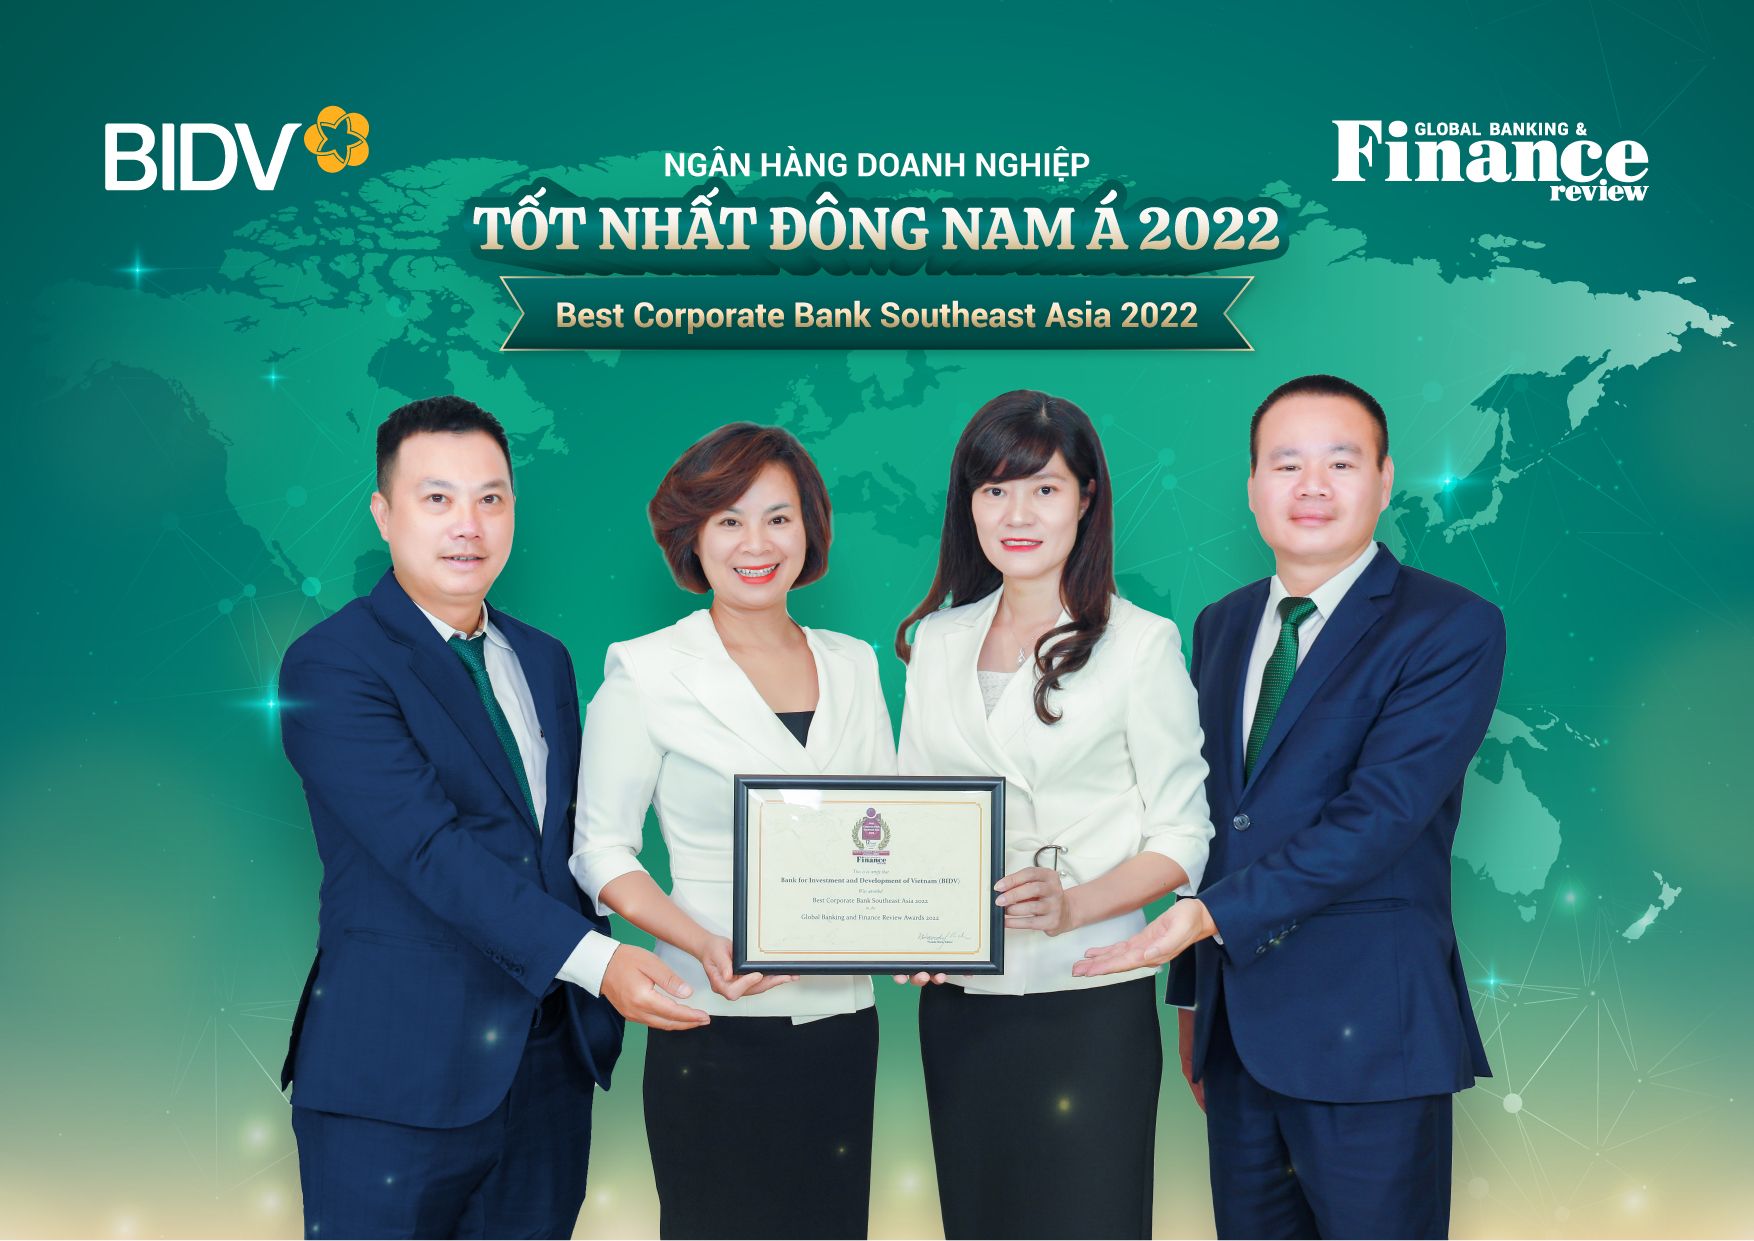 BIDV nhận cú đúp giải thưởng từ Tạp chí Global Banking and Finance - Ảnh 2.